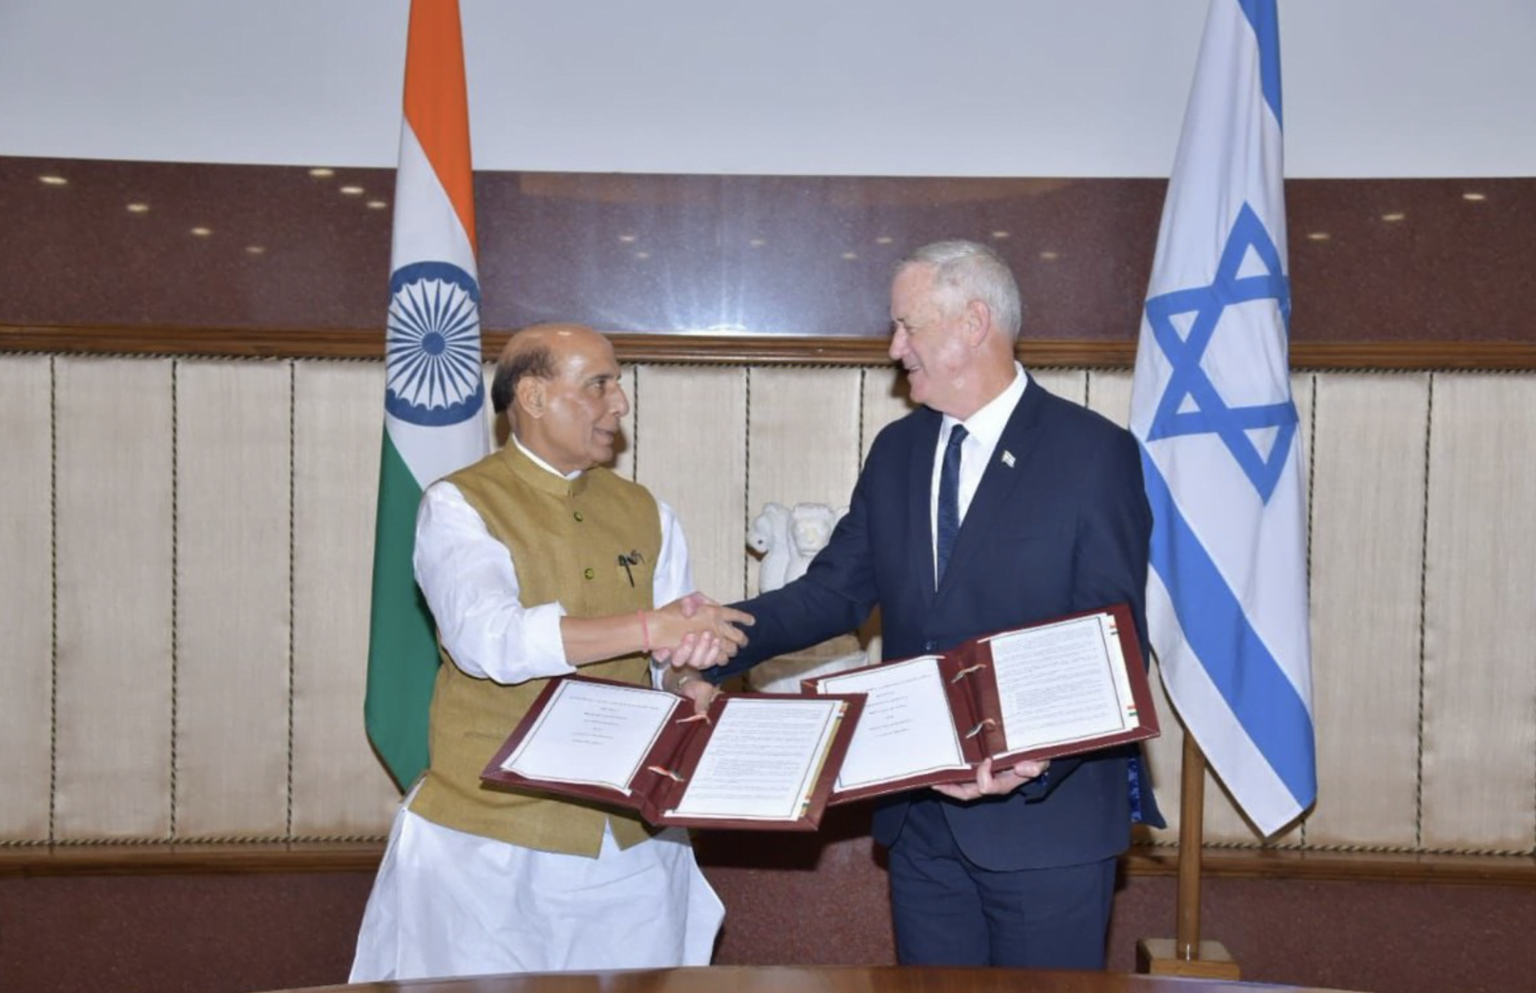 Αμυντική συμφωνία Ισραήλ-Ινδίας: ”Απάντηση” στον άξονα Τουρκίας-Πακιστάν – Στο Ν. Δελχί ο Benny Gantz